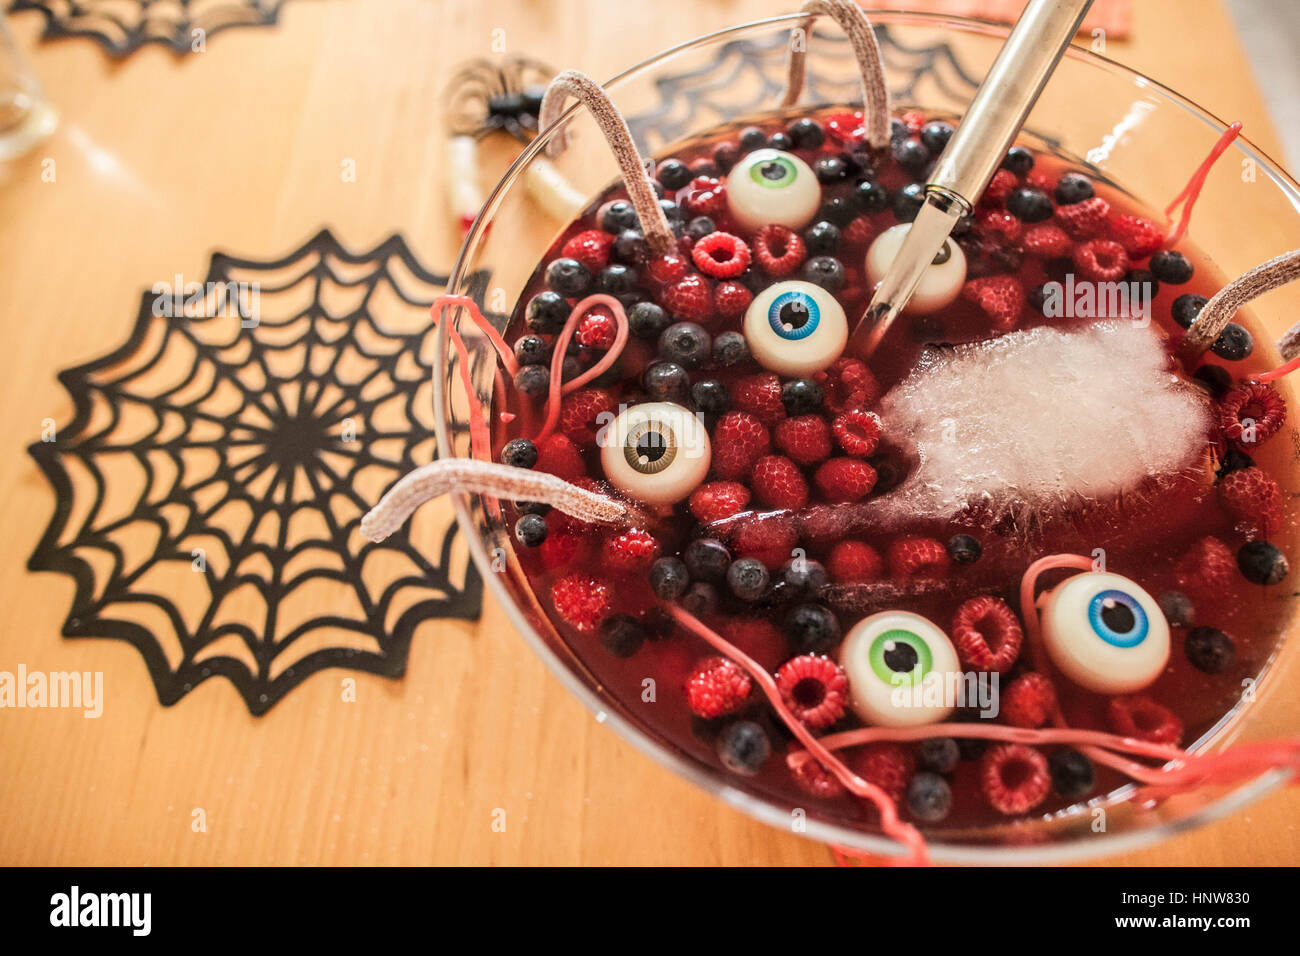 Halloween-Dessert mit Beeren und schwimmende Augäpfel, close-up Stockfoto